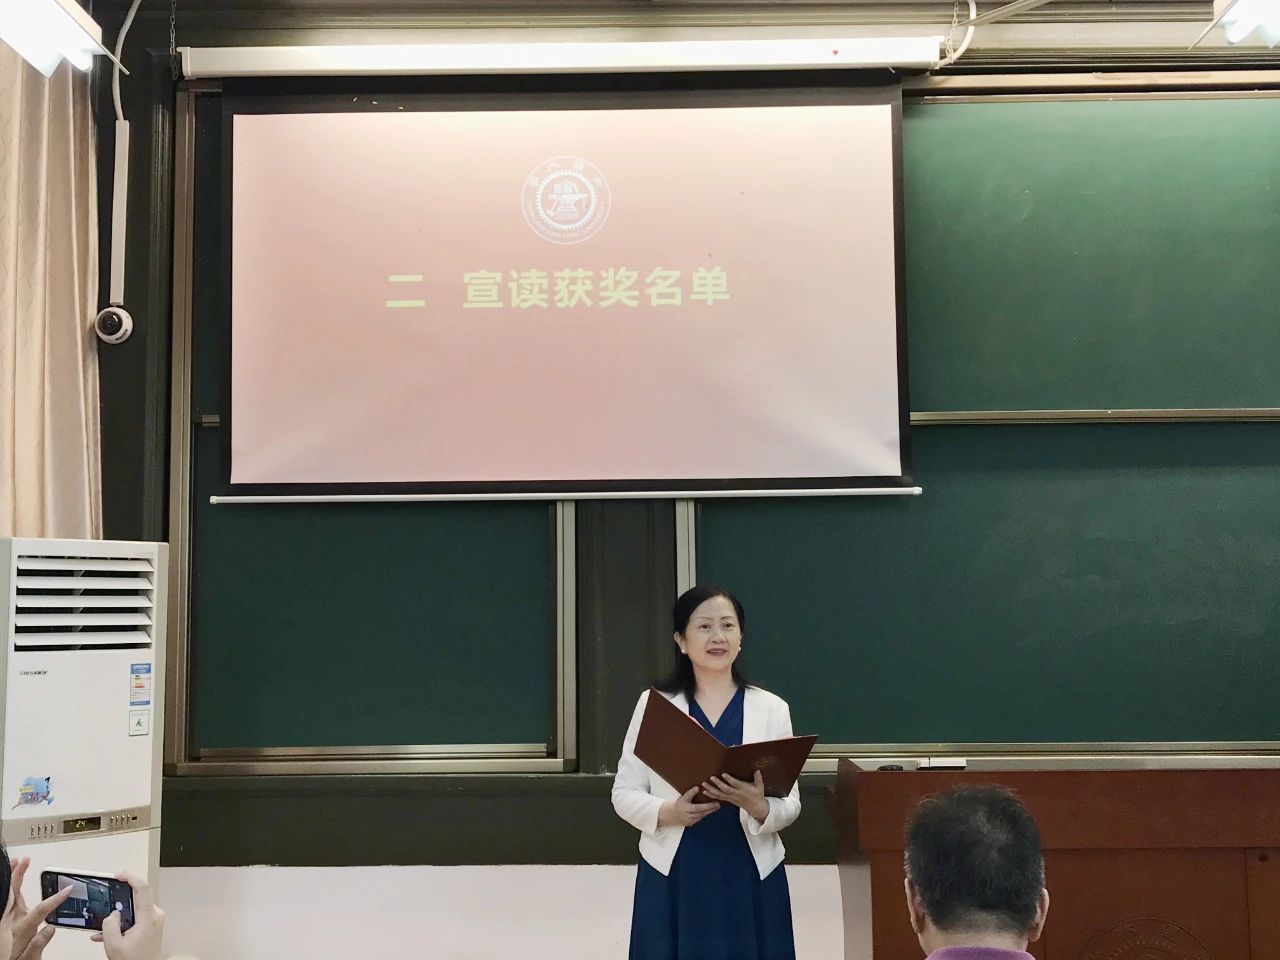 上海交大机动学院专业学位研究生教育中心蔡小春主任宣读获奖名单